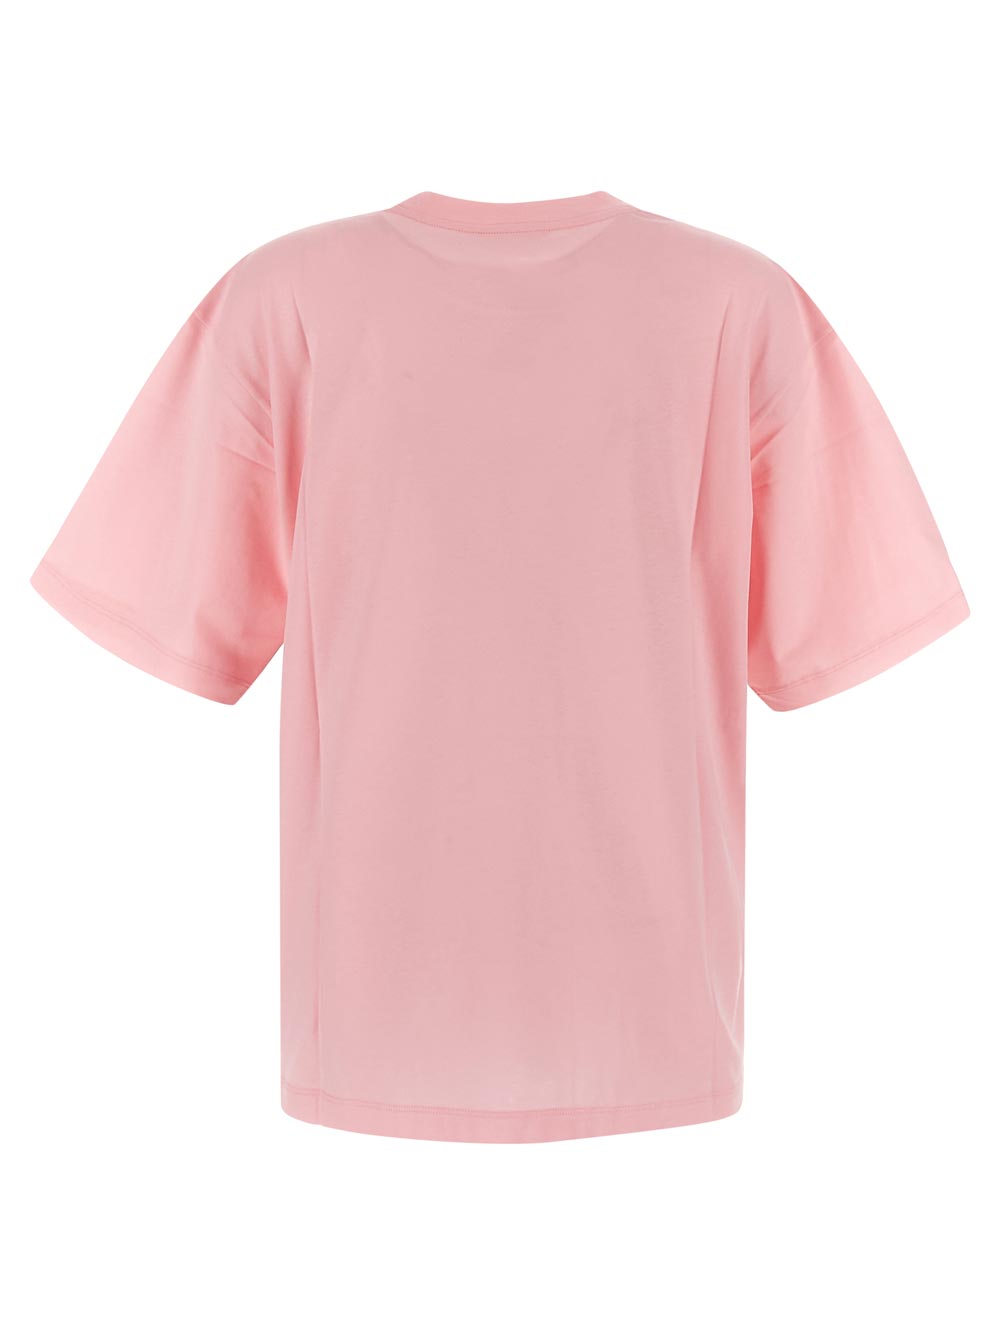 Marni Pink T-Shirt With Marni Print